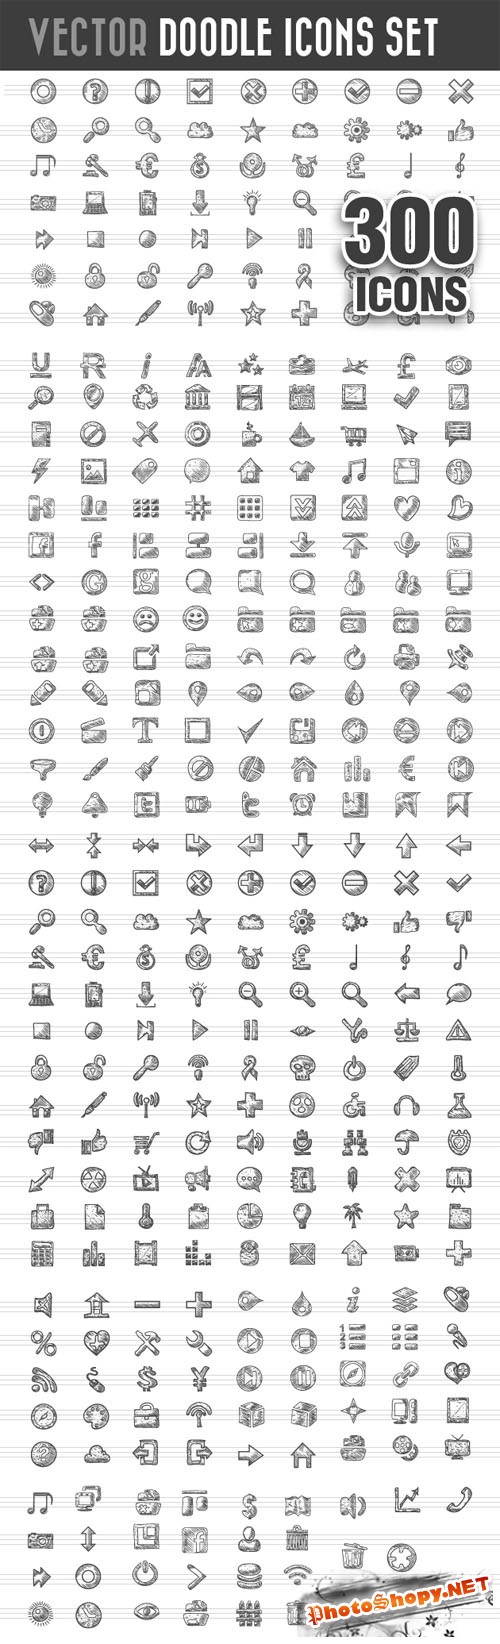 Designtnt - Doodle Icons Vector Set 1